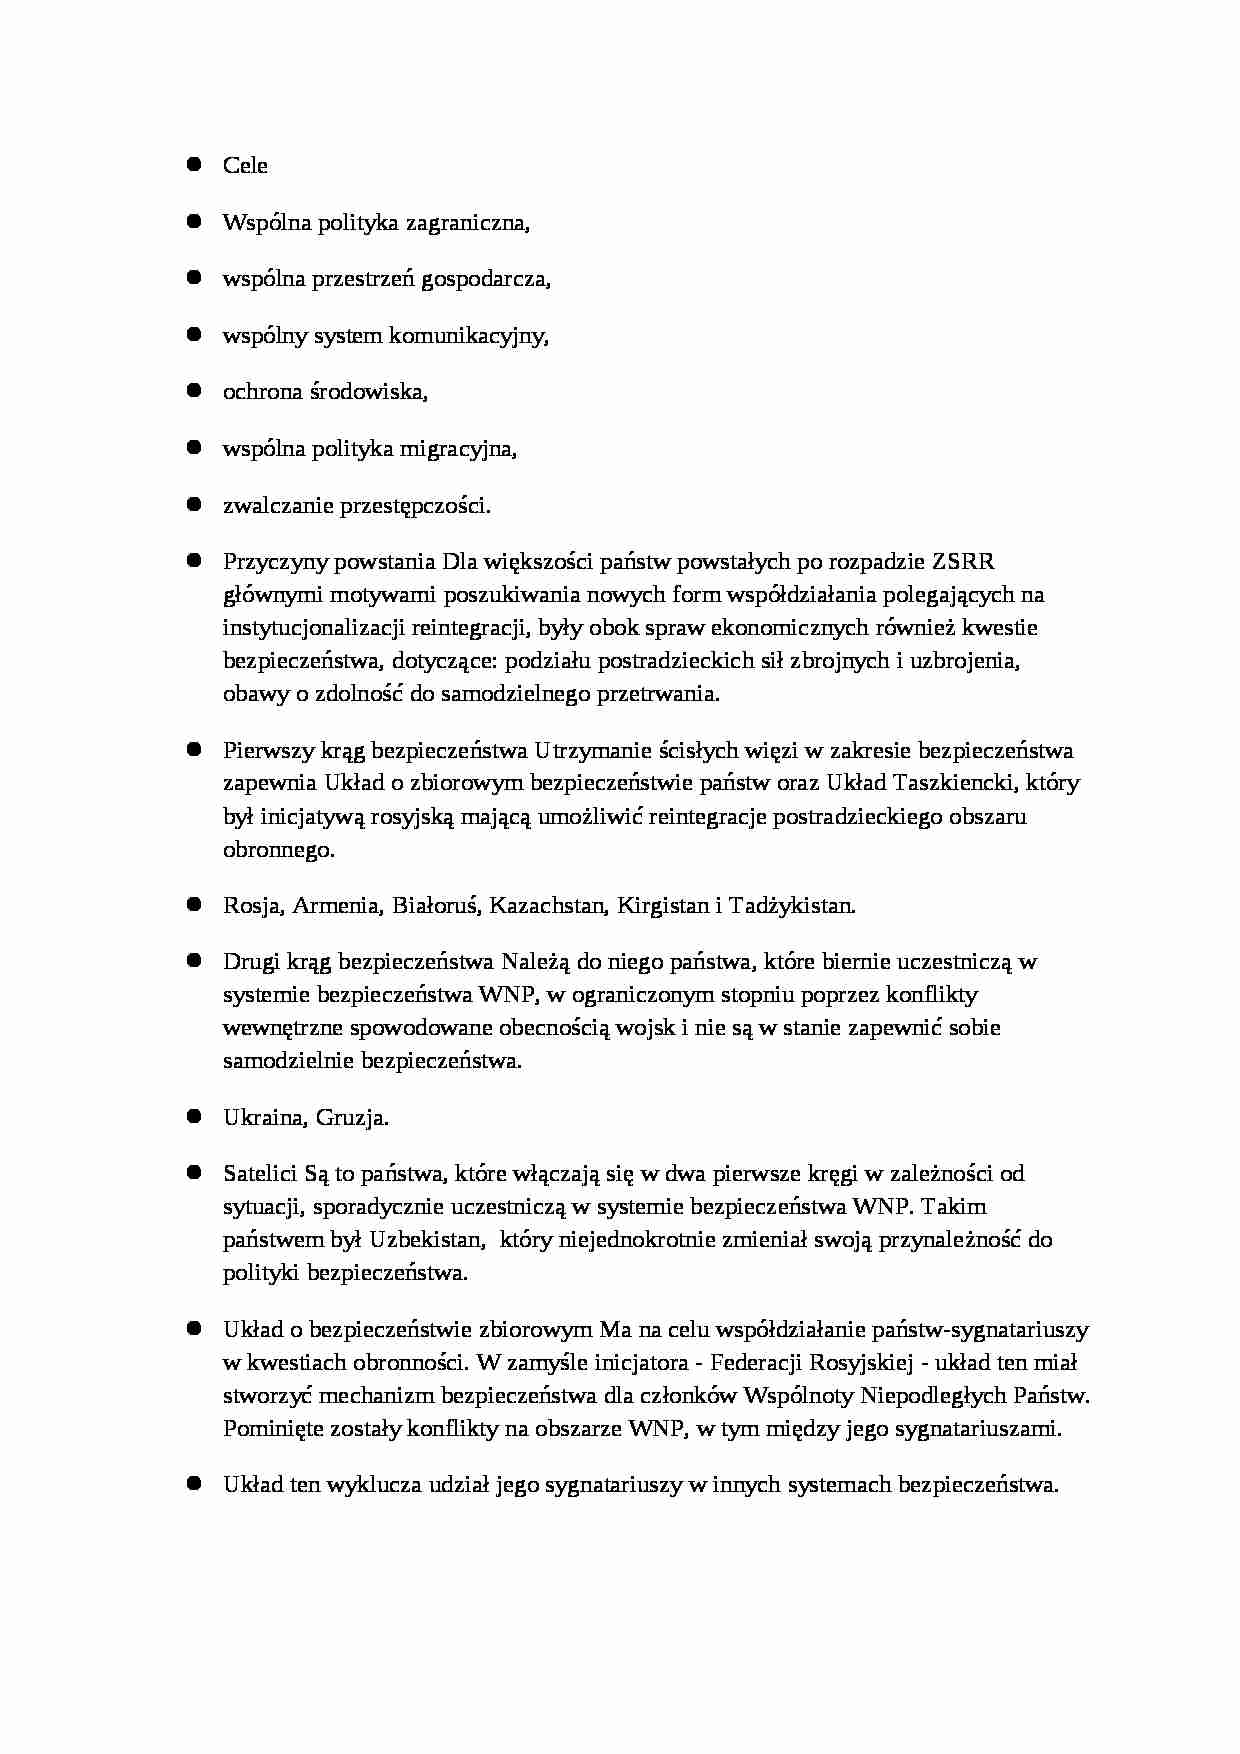 Cele utworzenia Układu Białowieskiego - omówienie - strona 1